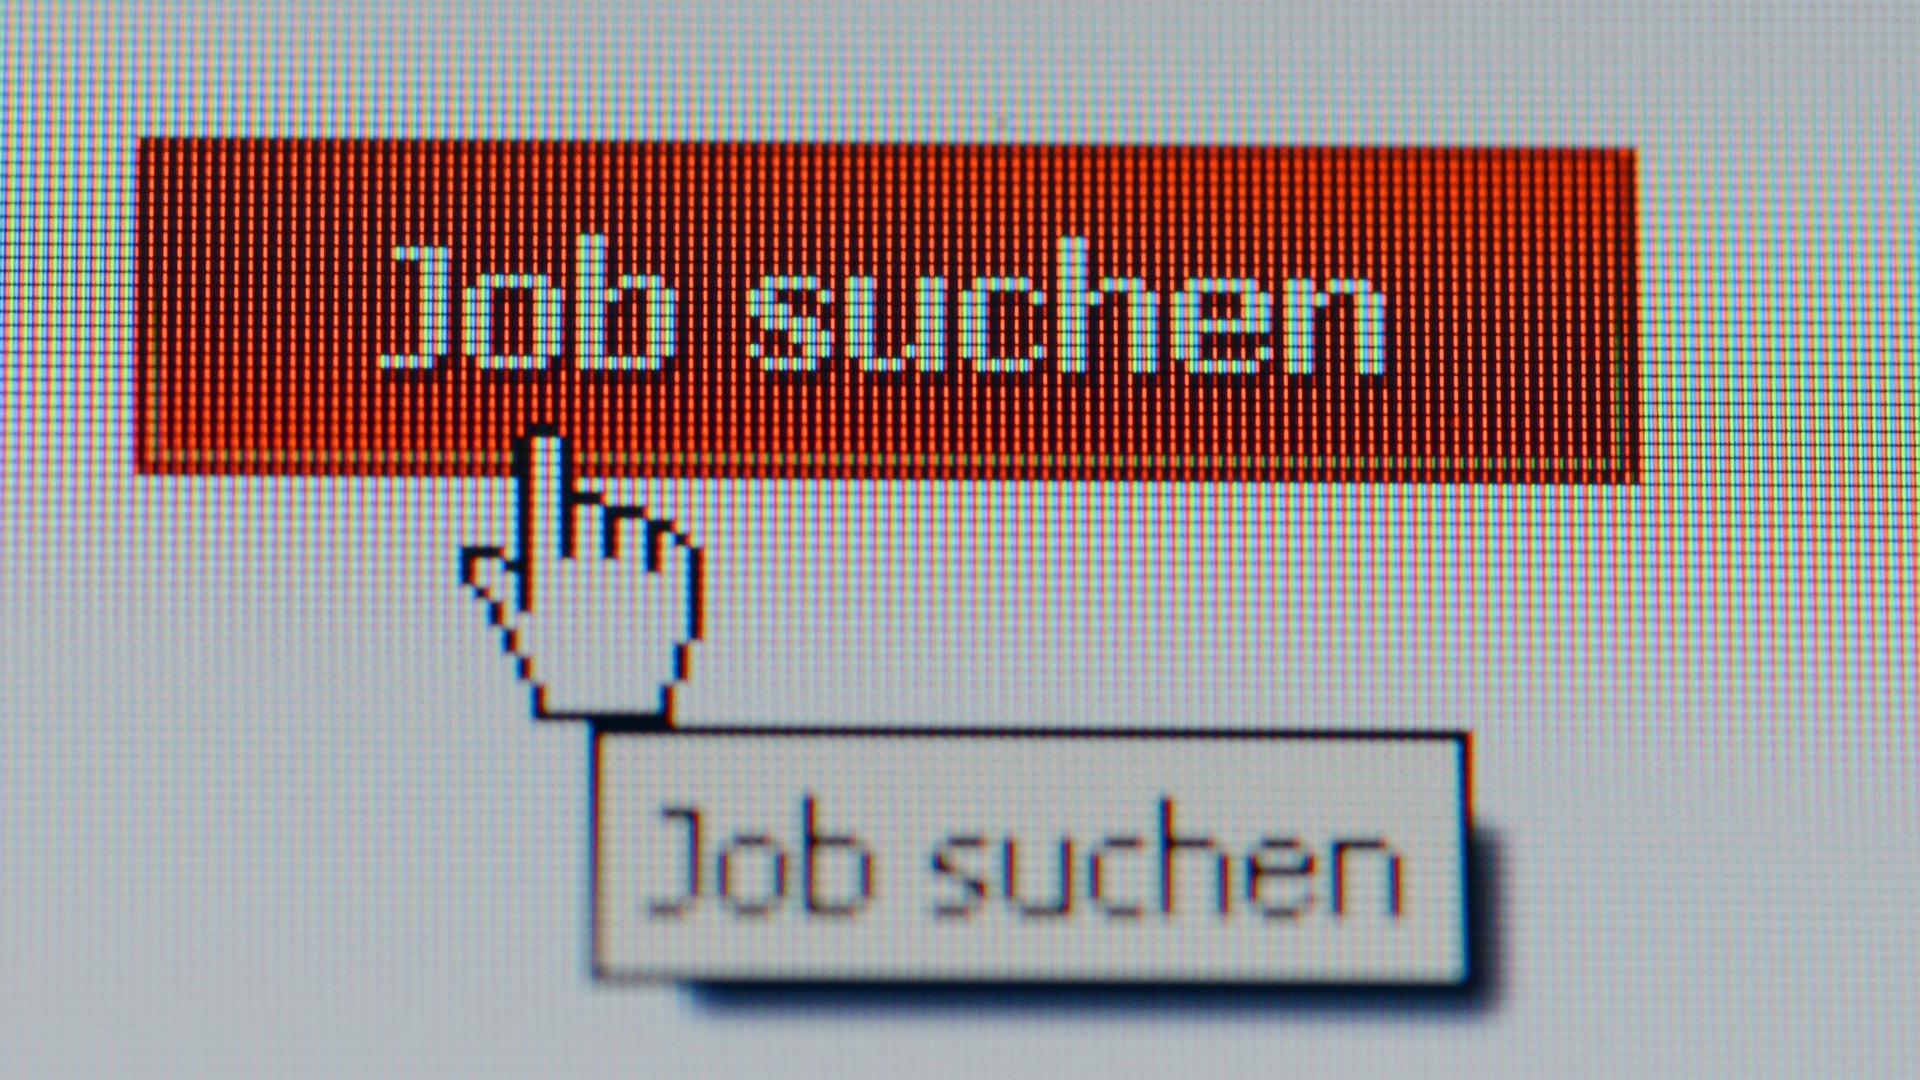 Bildschirm mit der Aufschrift "Job suche" - Wer länger arbeitslos ist, tut sich oft schwer, ins Erwerbsleben zurückzufinden und braucht Hilfe dabei.